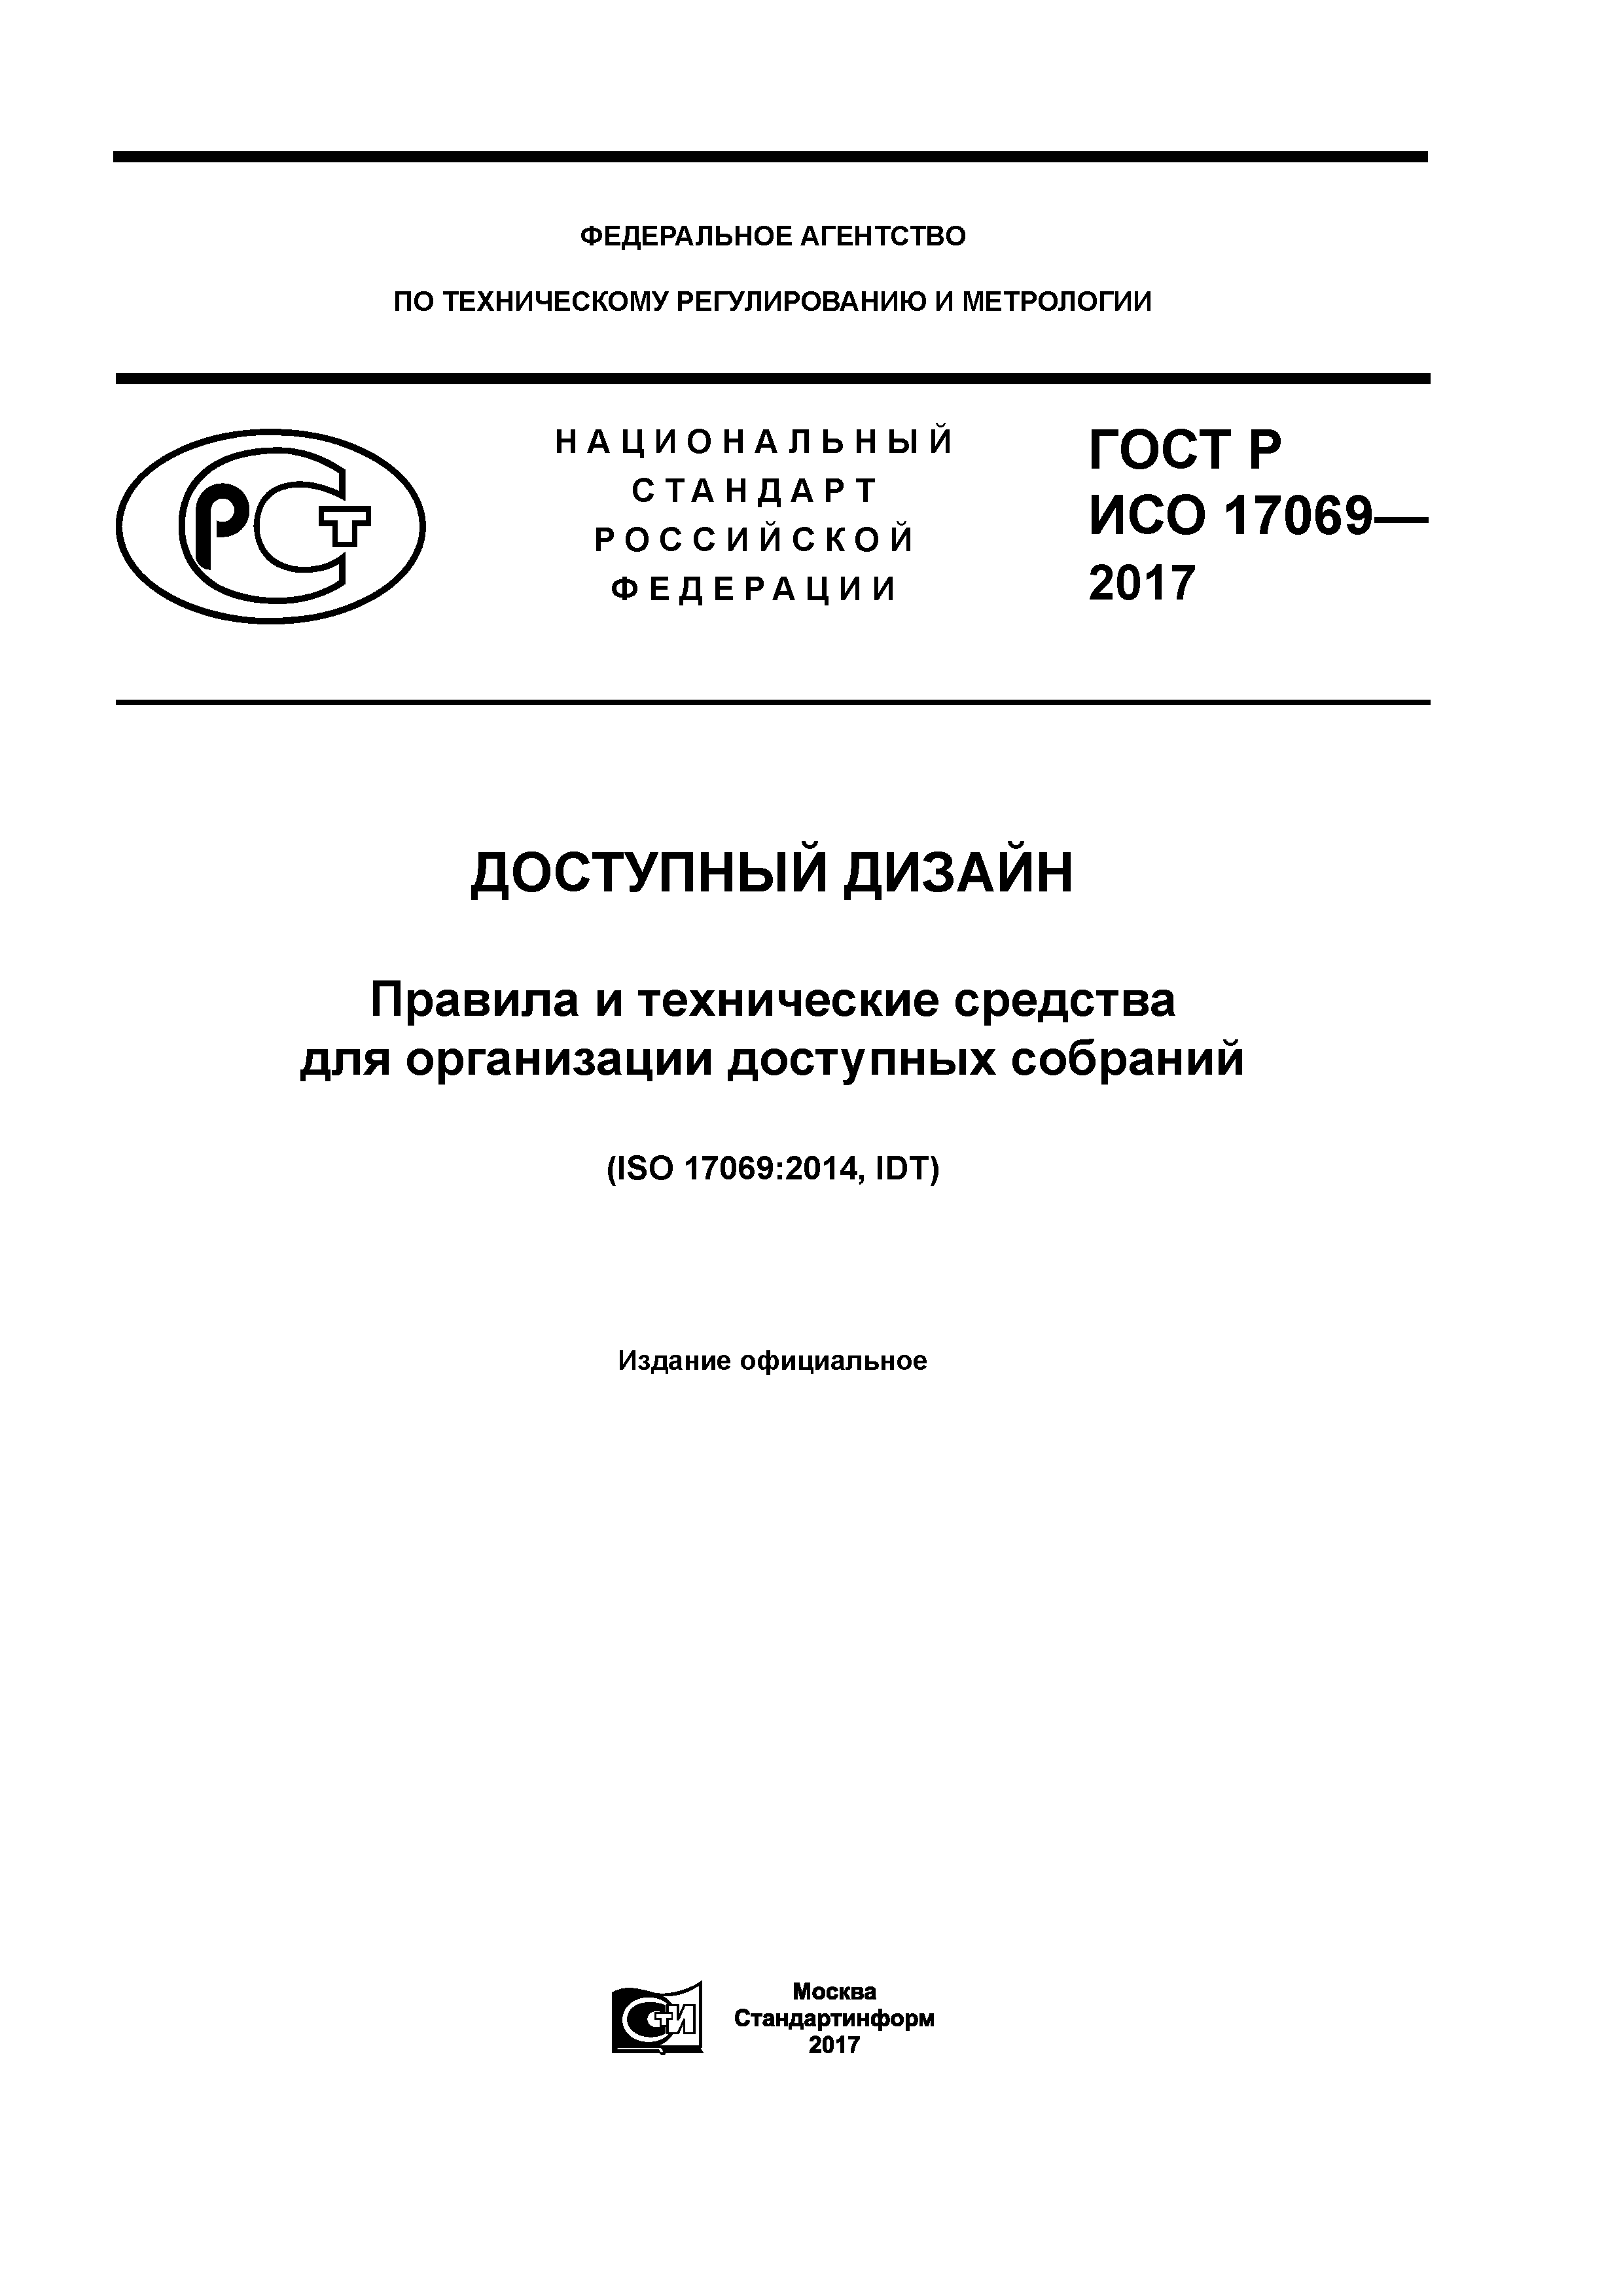 ГОСТ Р ИСО 17069-2017